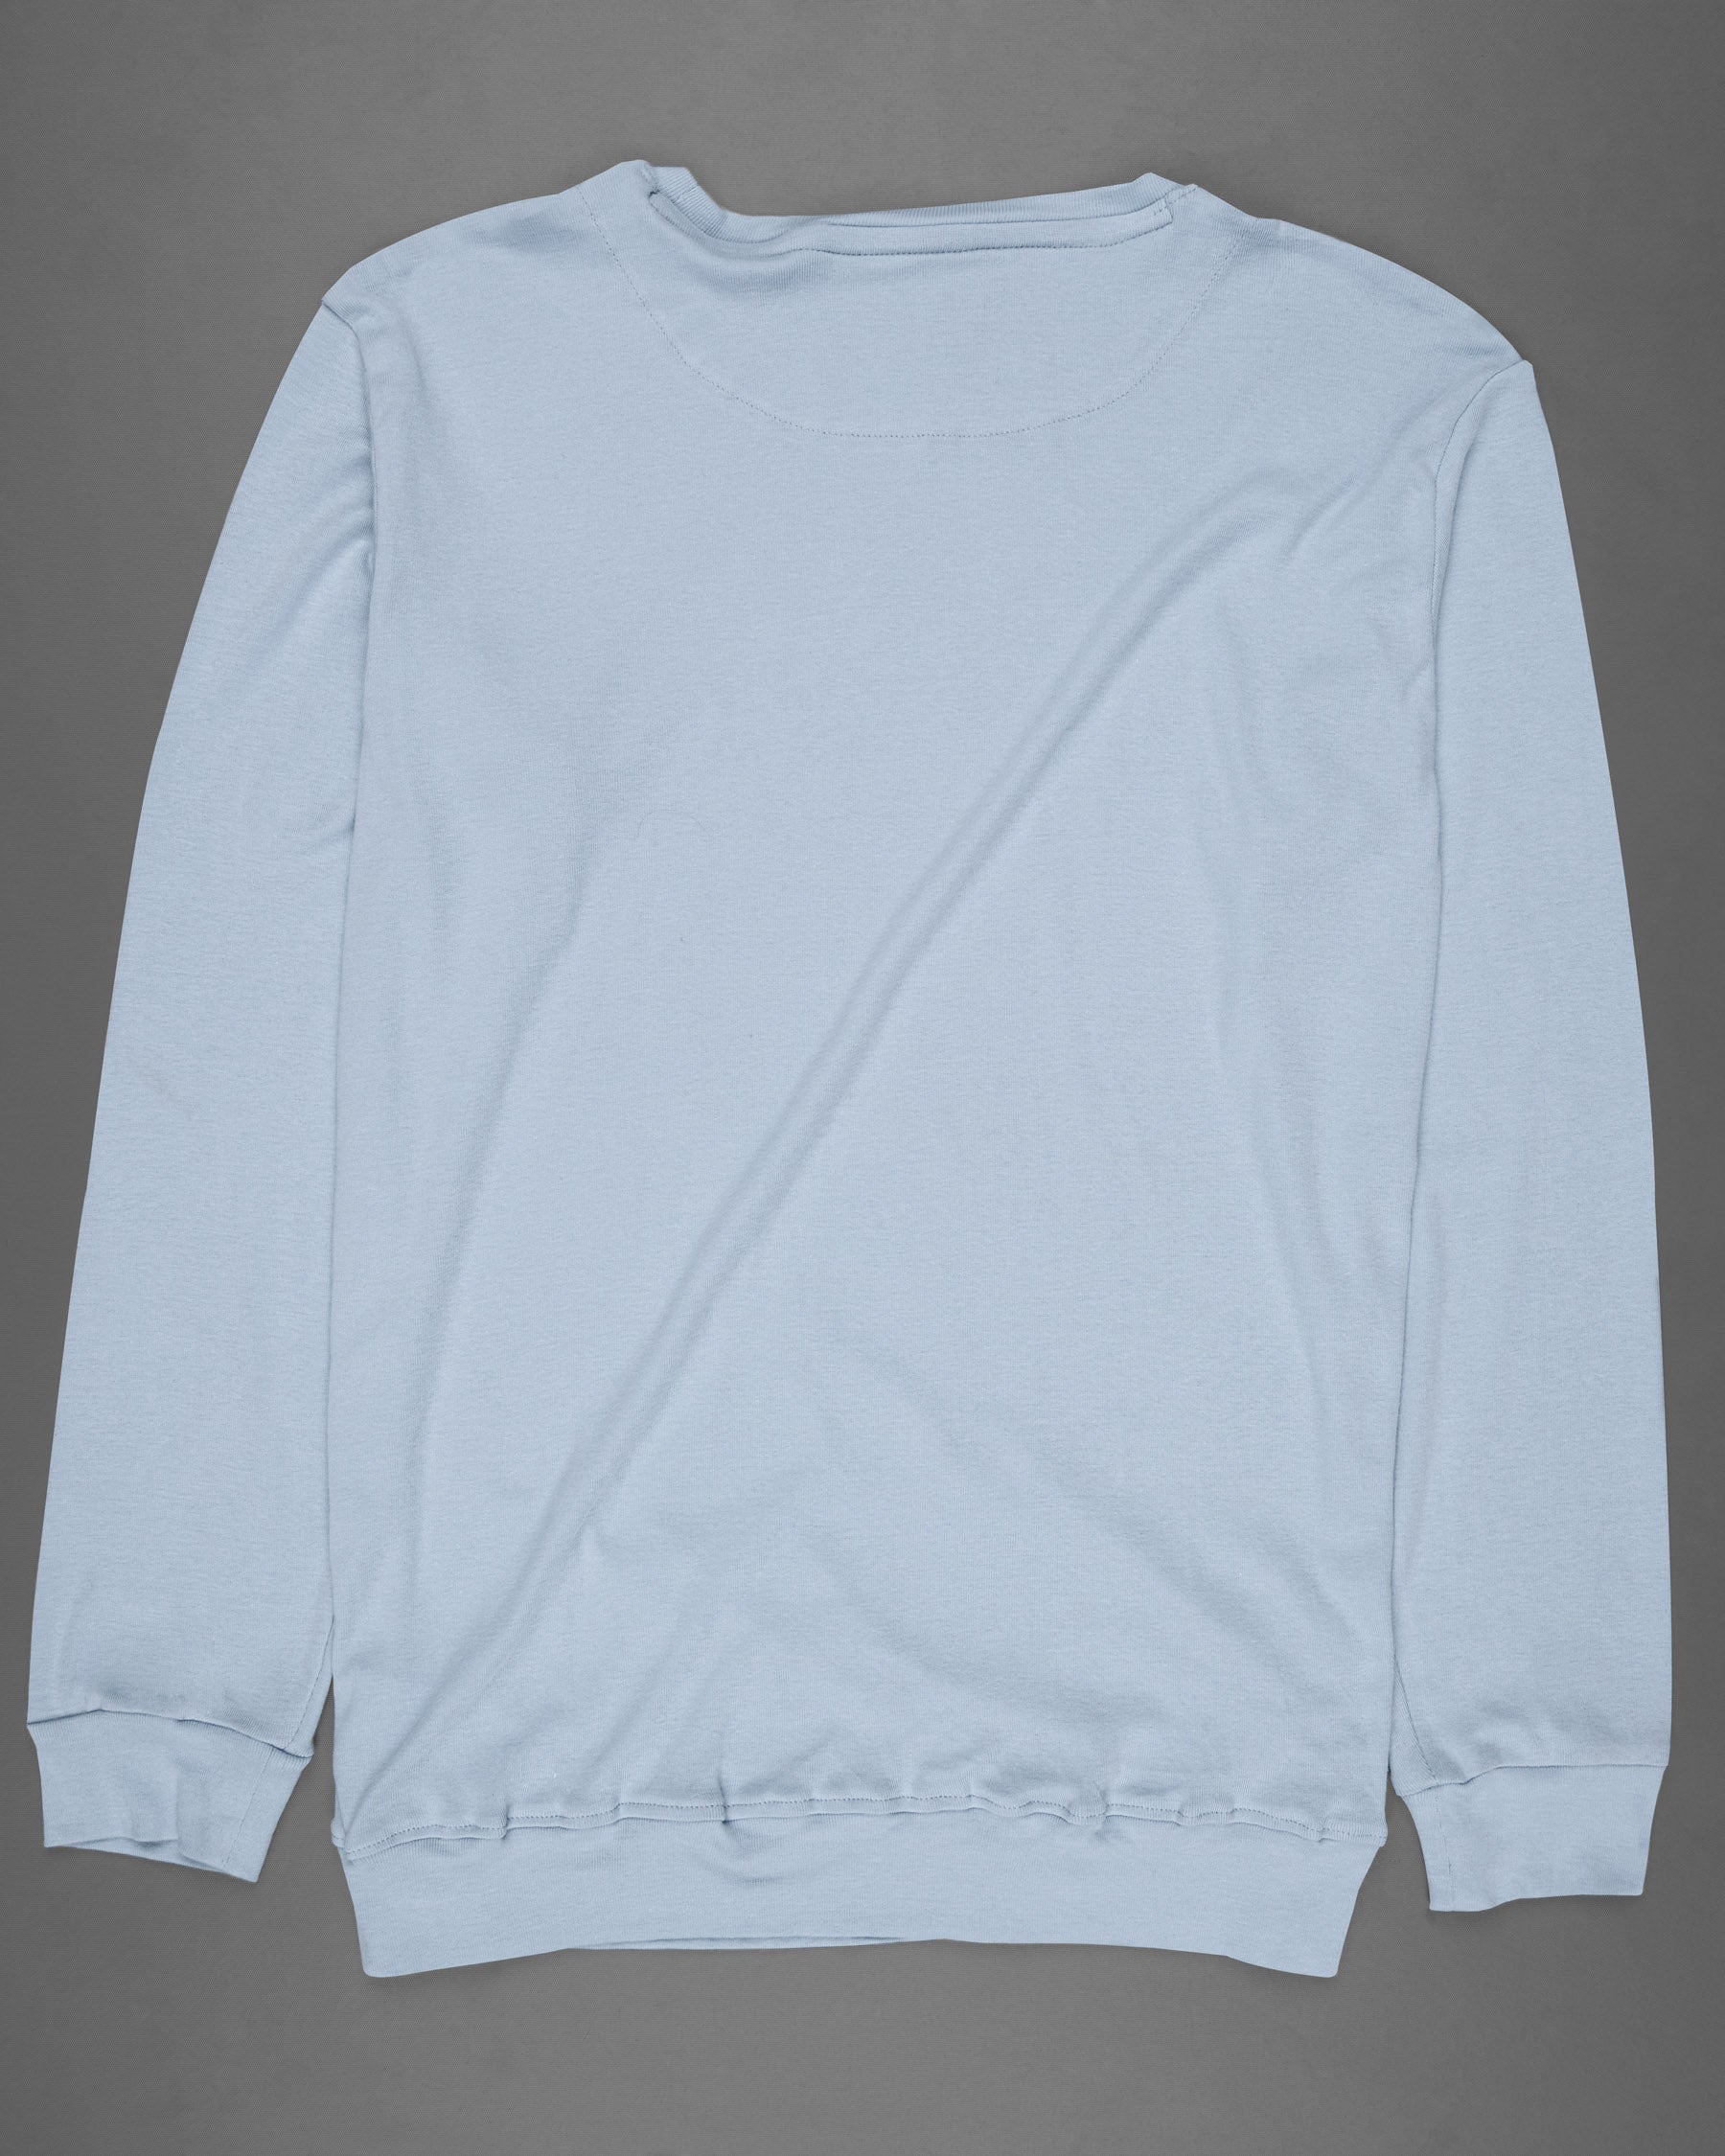 Nepal Blue Full Sleeve Super Soft Premium Cotton Sweatshirt TS466-S, TS466-M, TS466-L, TS466-XL, TS466-XXL